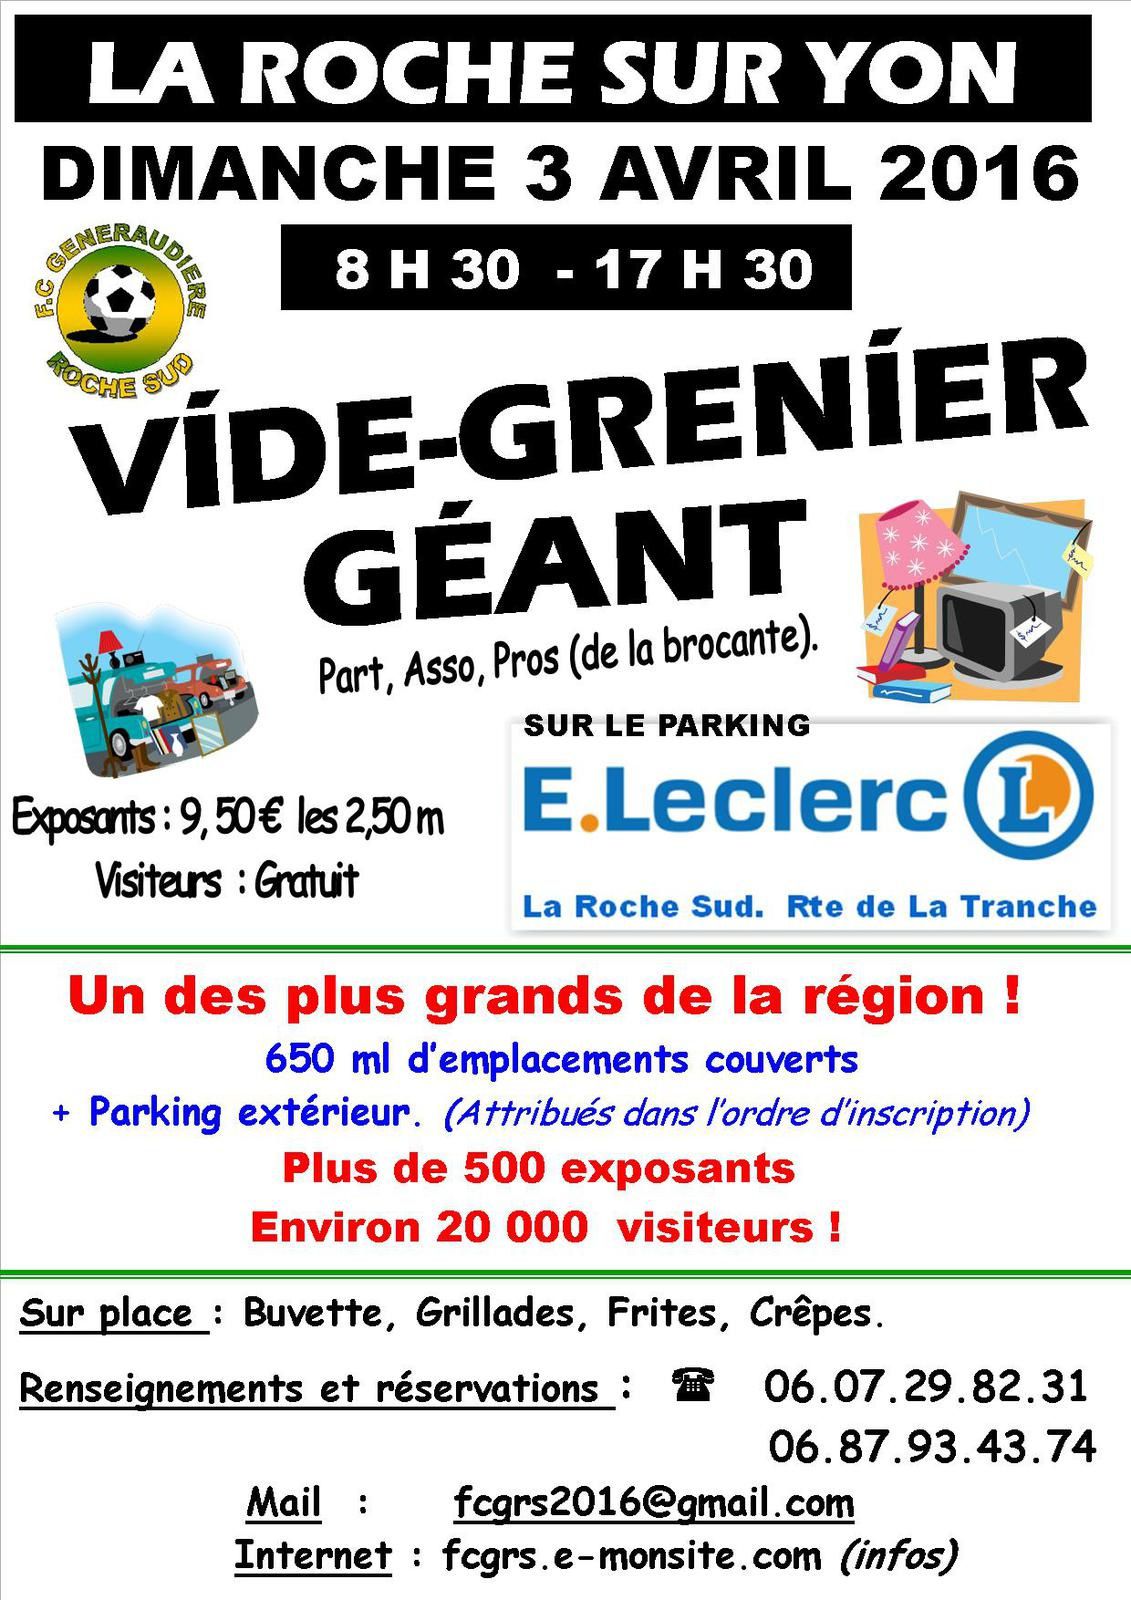 La Roche-sur-Yon. Vide-Grenier Géant le dimanche 3 avril 2016.